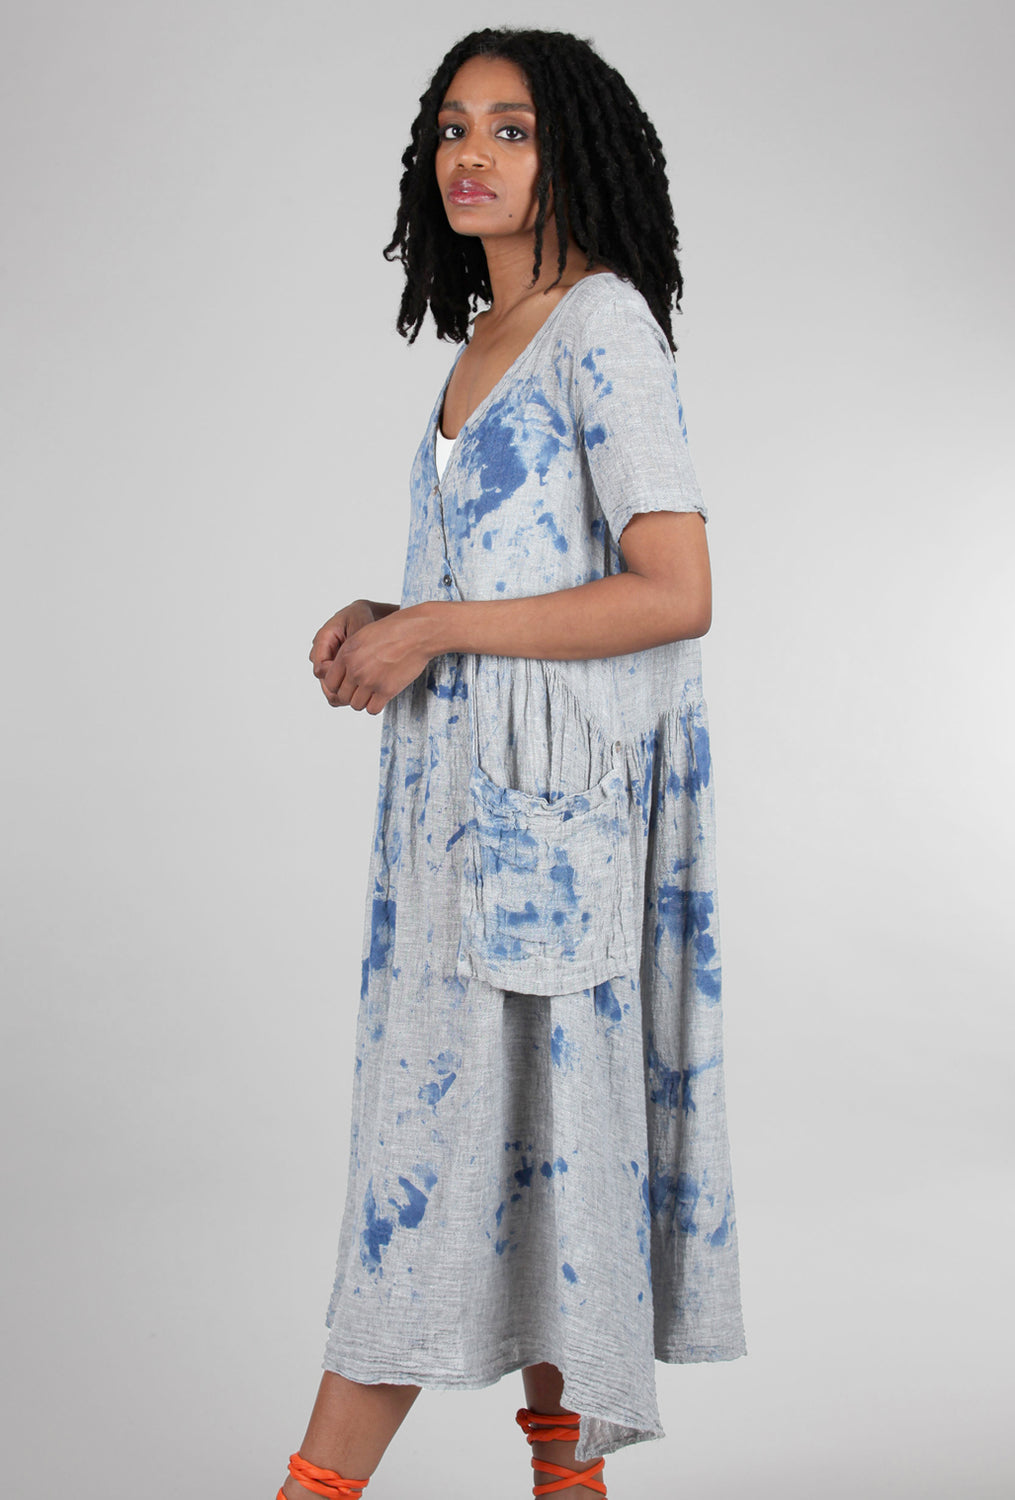 Luukaa Drop-Waist Linen Dress, Gray/Blue 